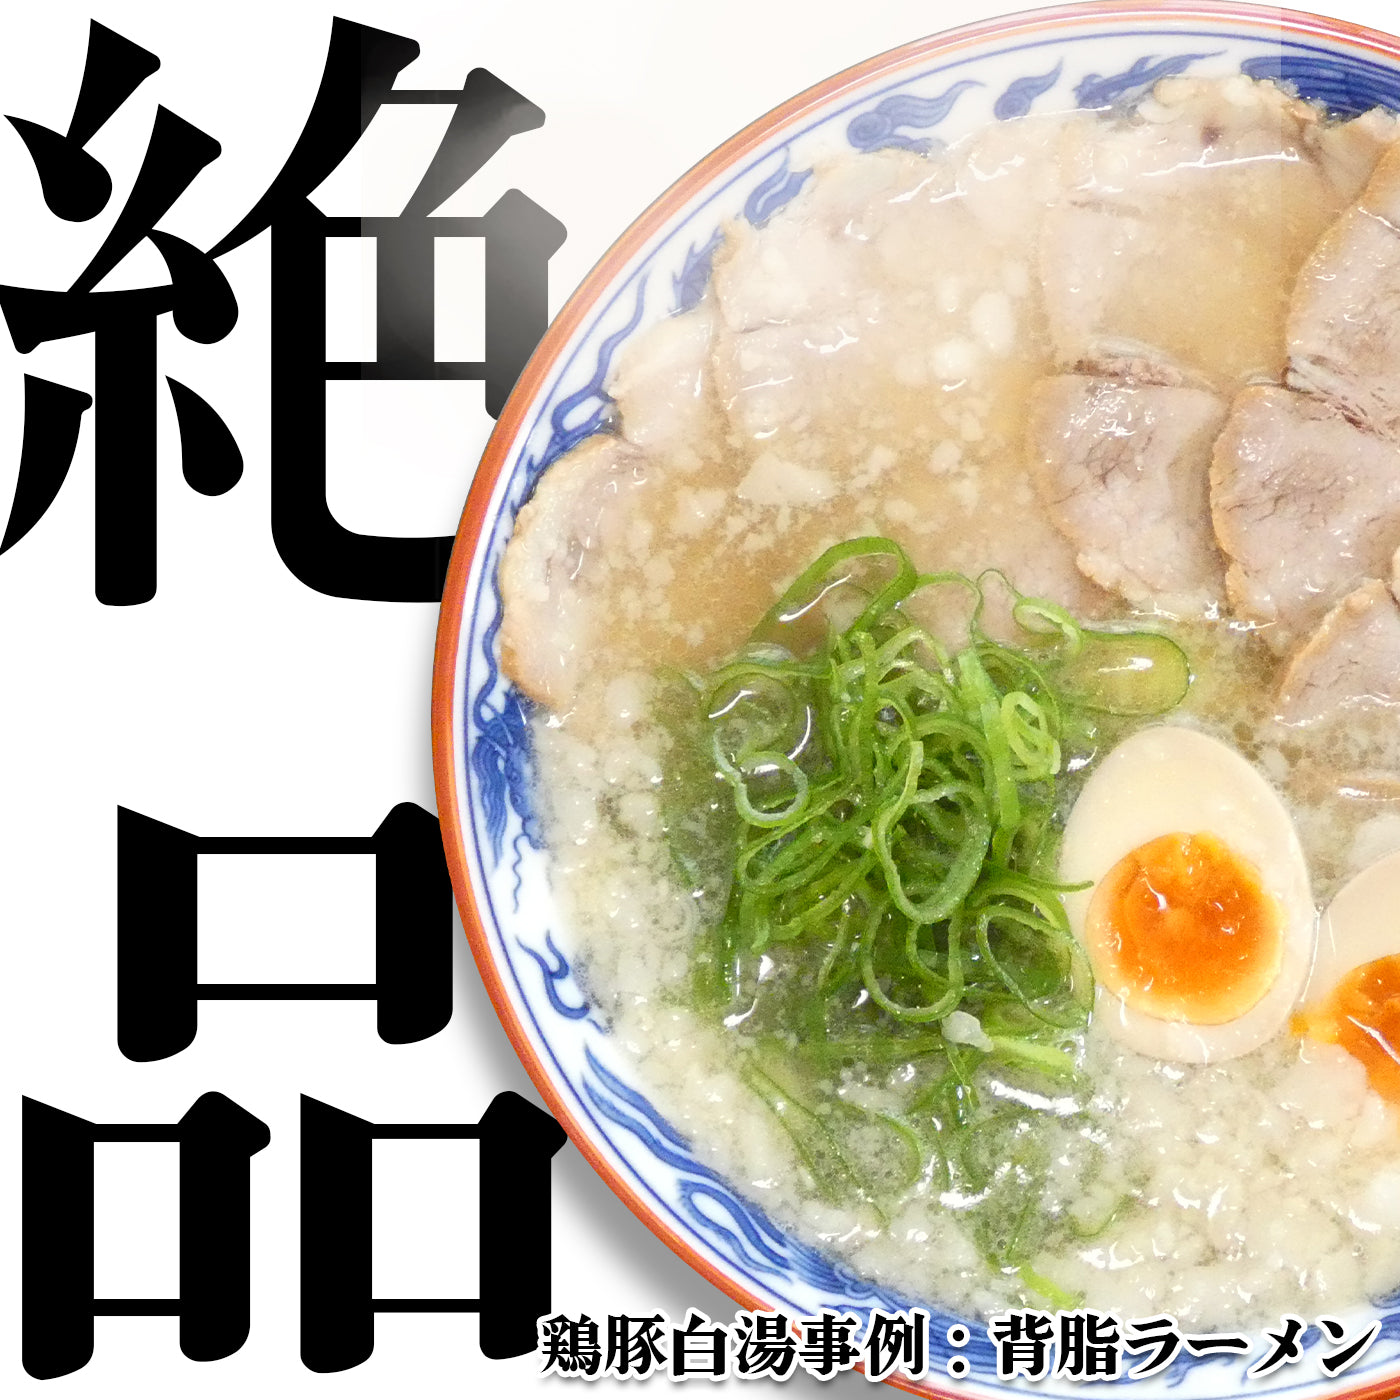 【無料サンプル】鶏豚白湯スープのスタートセット